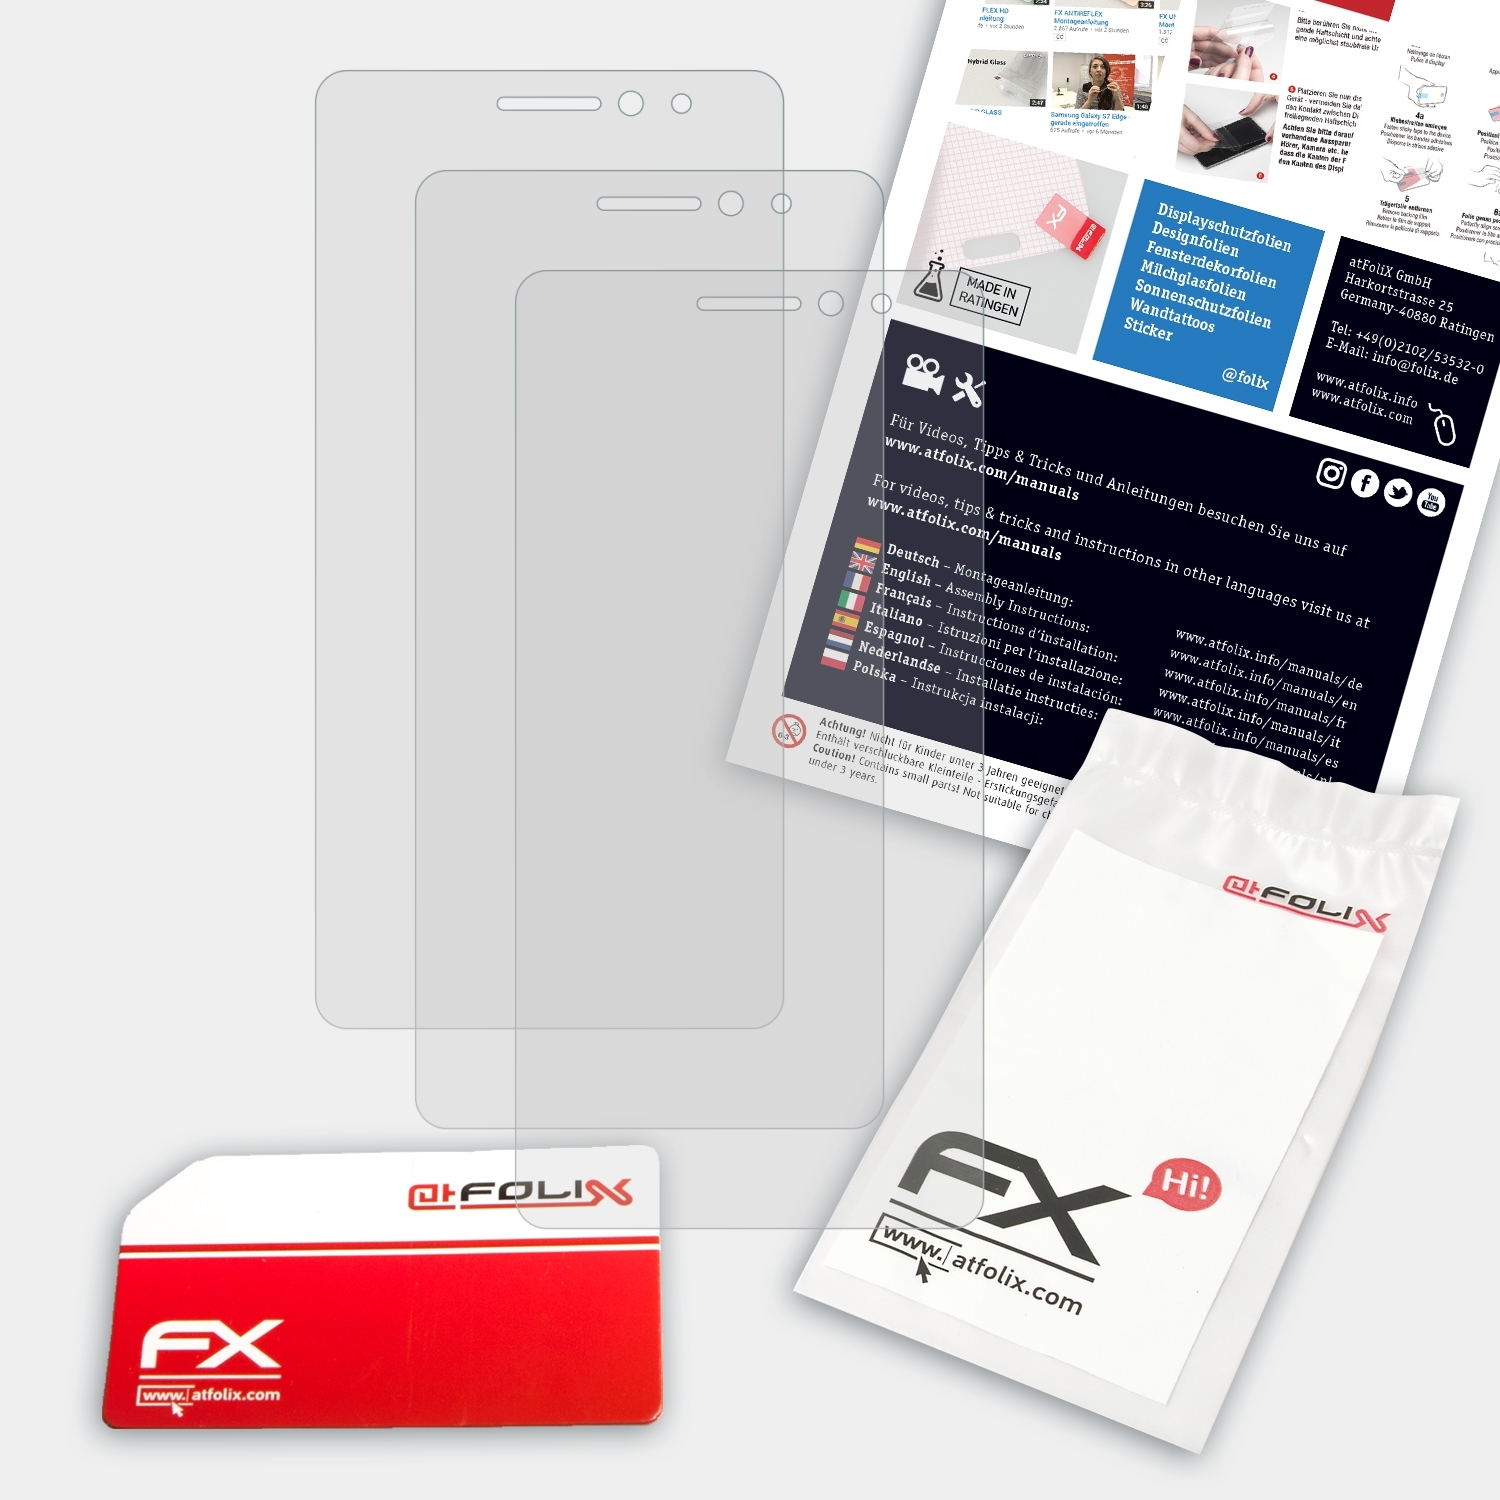 ATFOLIX 3x FX-Antireflex Displayschutz(für Lenovo Note) K3